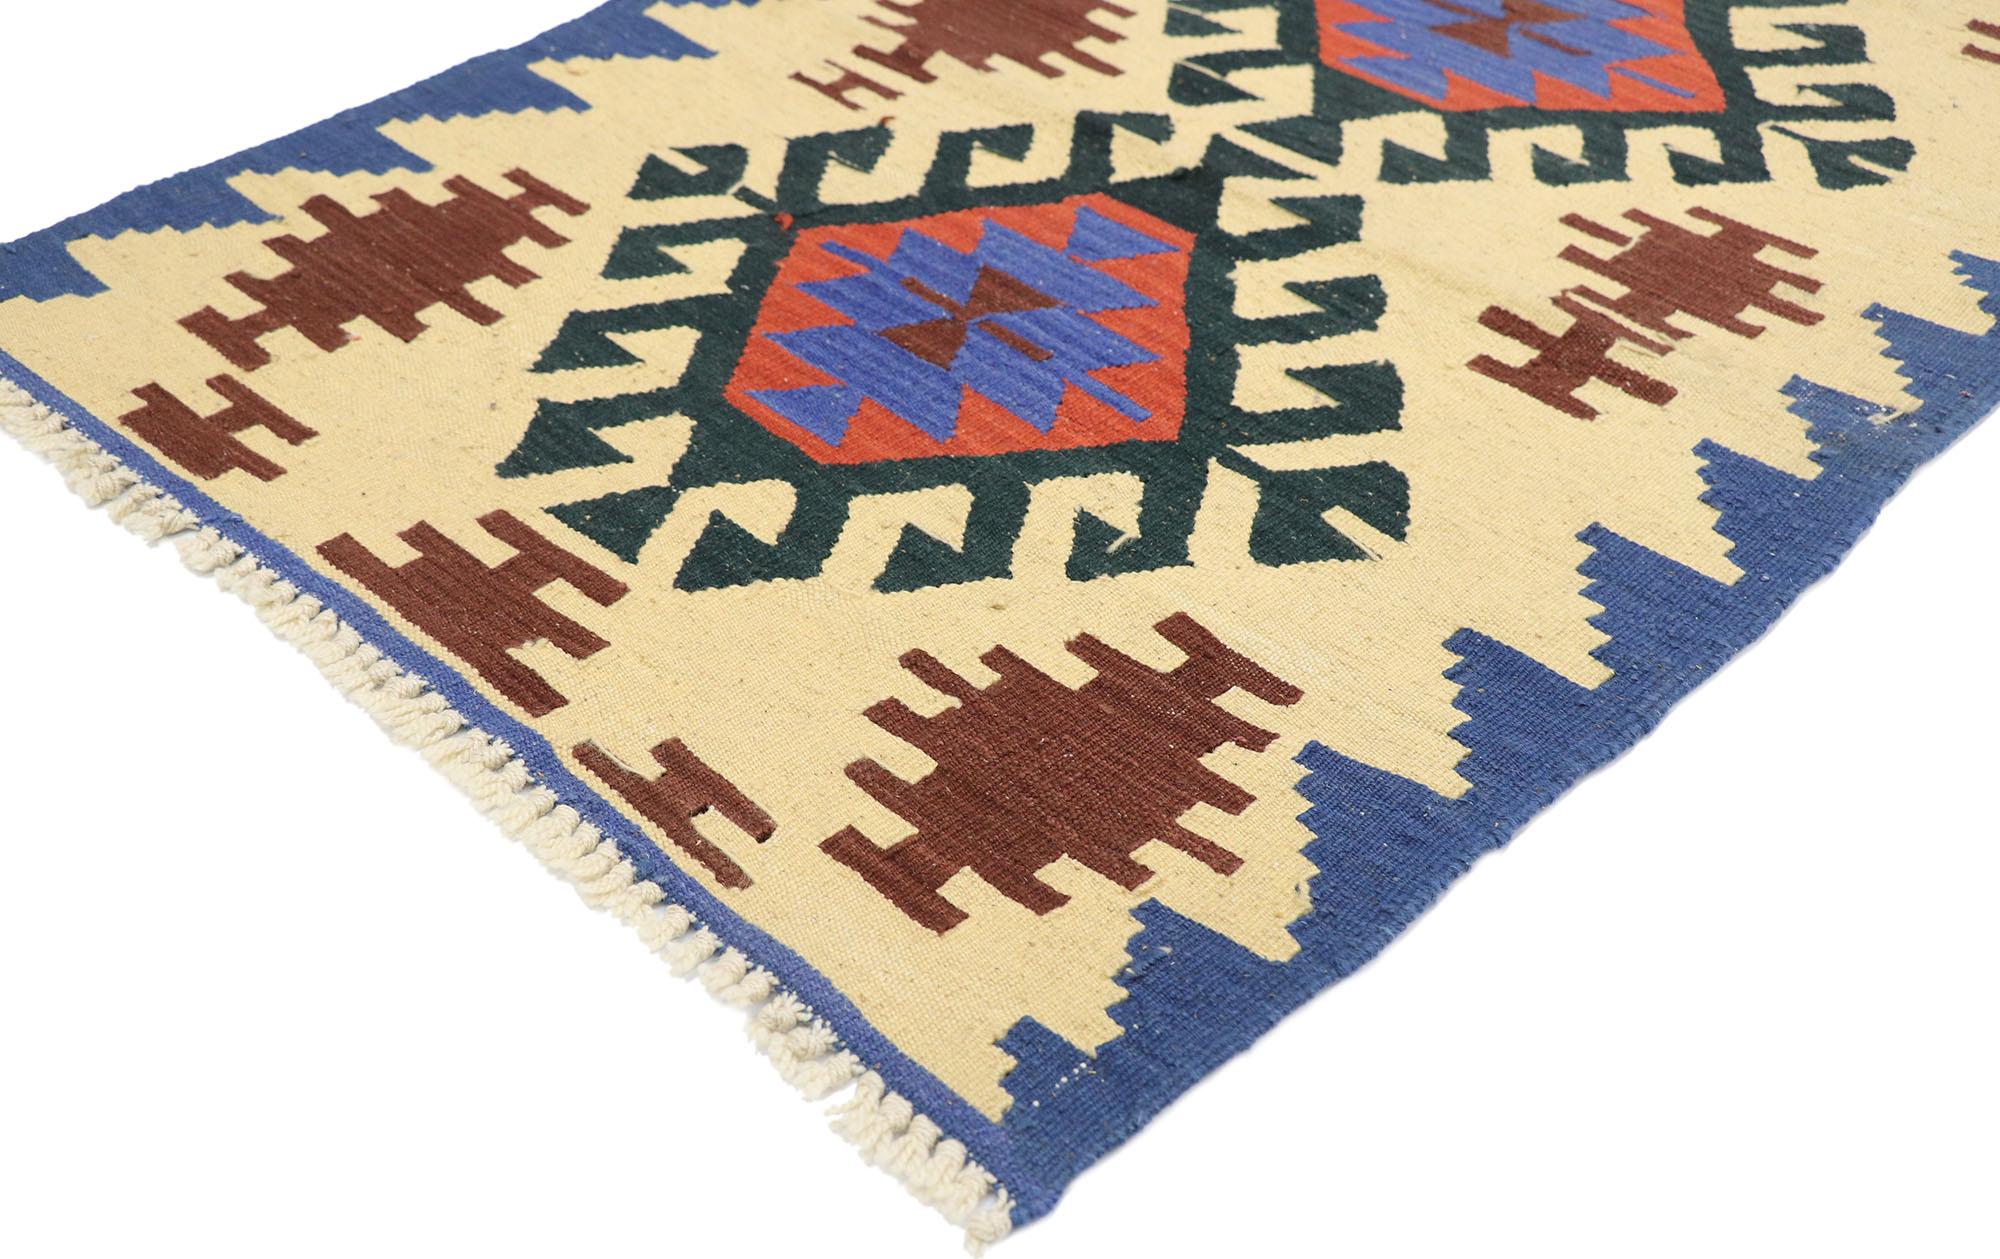 77916, tapis vintage Persan Shiraz Kilim avec style tribal. Plein de petits détails et un design expressif audacieux combiné avec des couleurs vibrantes et un style tribal, ce tapis kilim persan vintage en laine tissé à la main est une vision